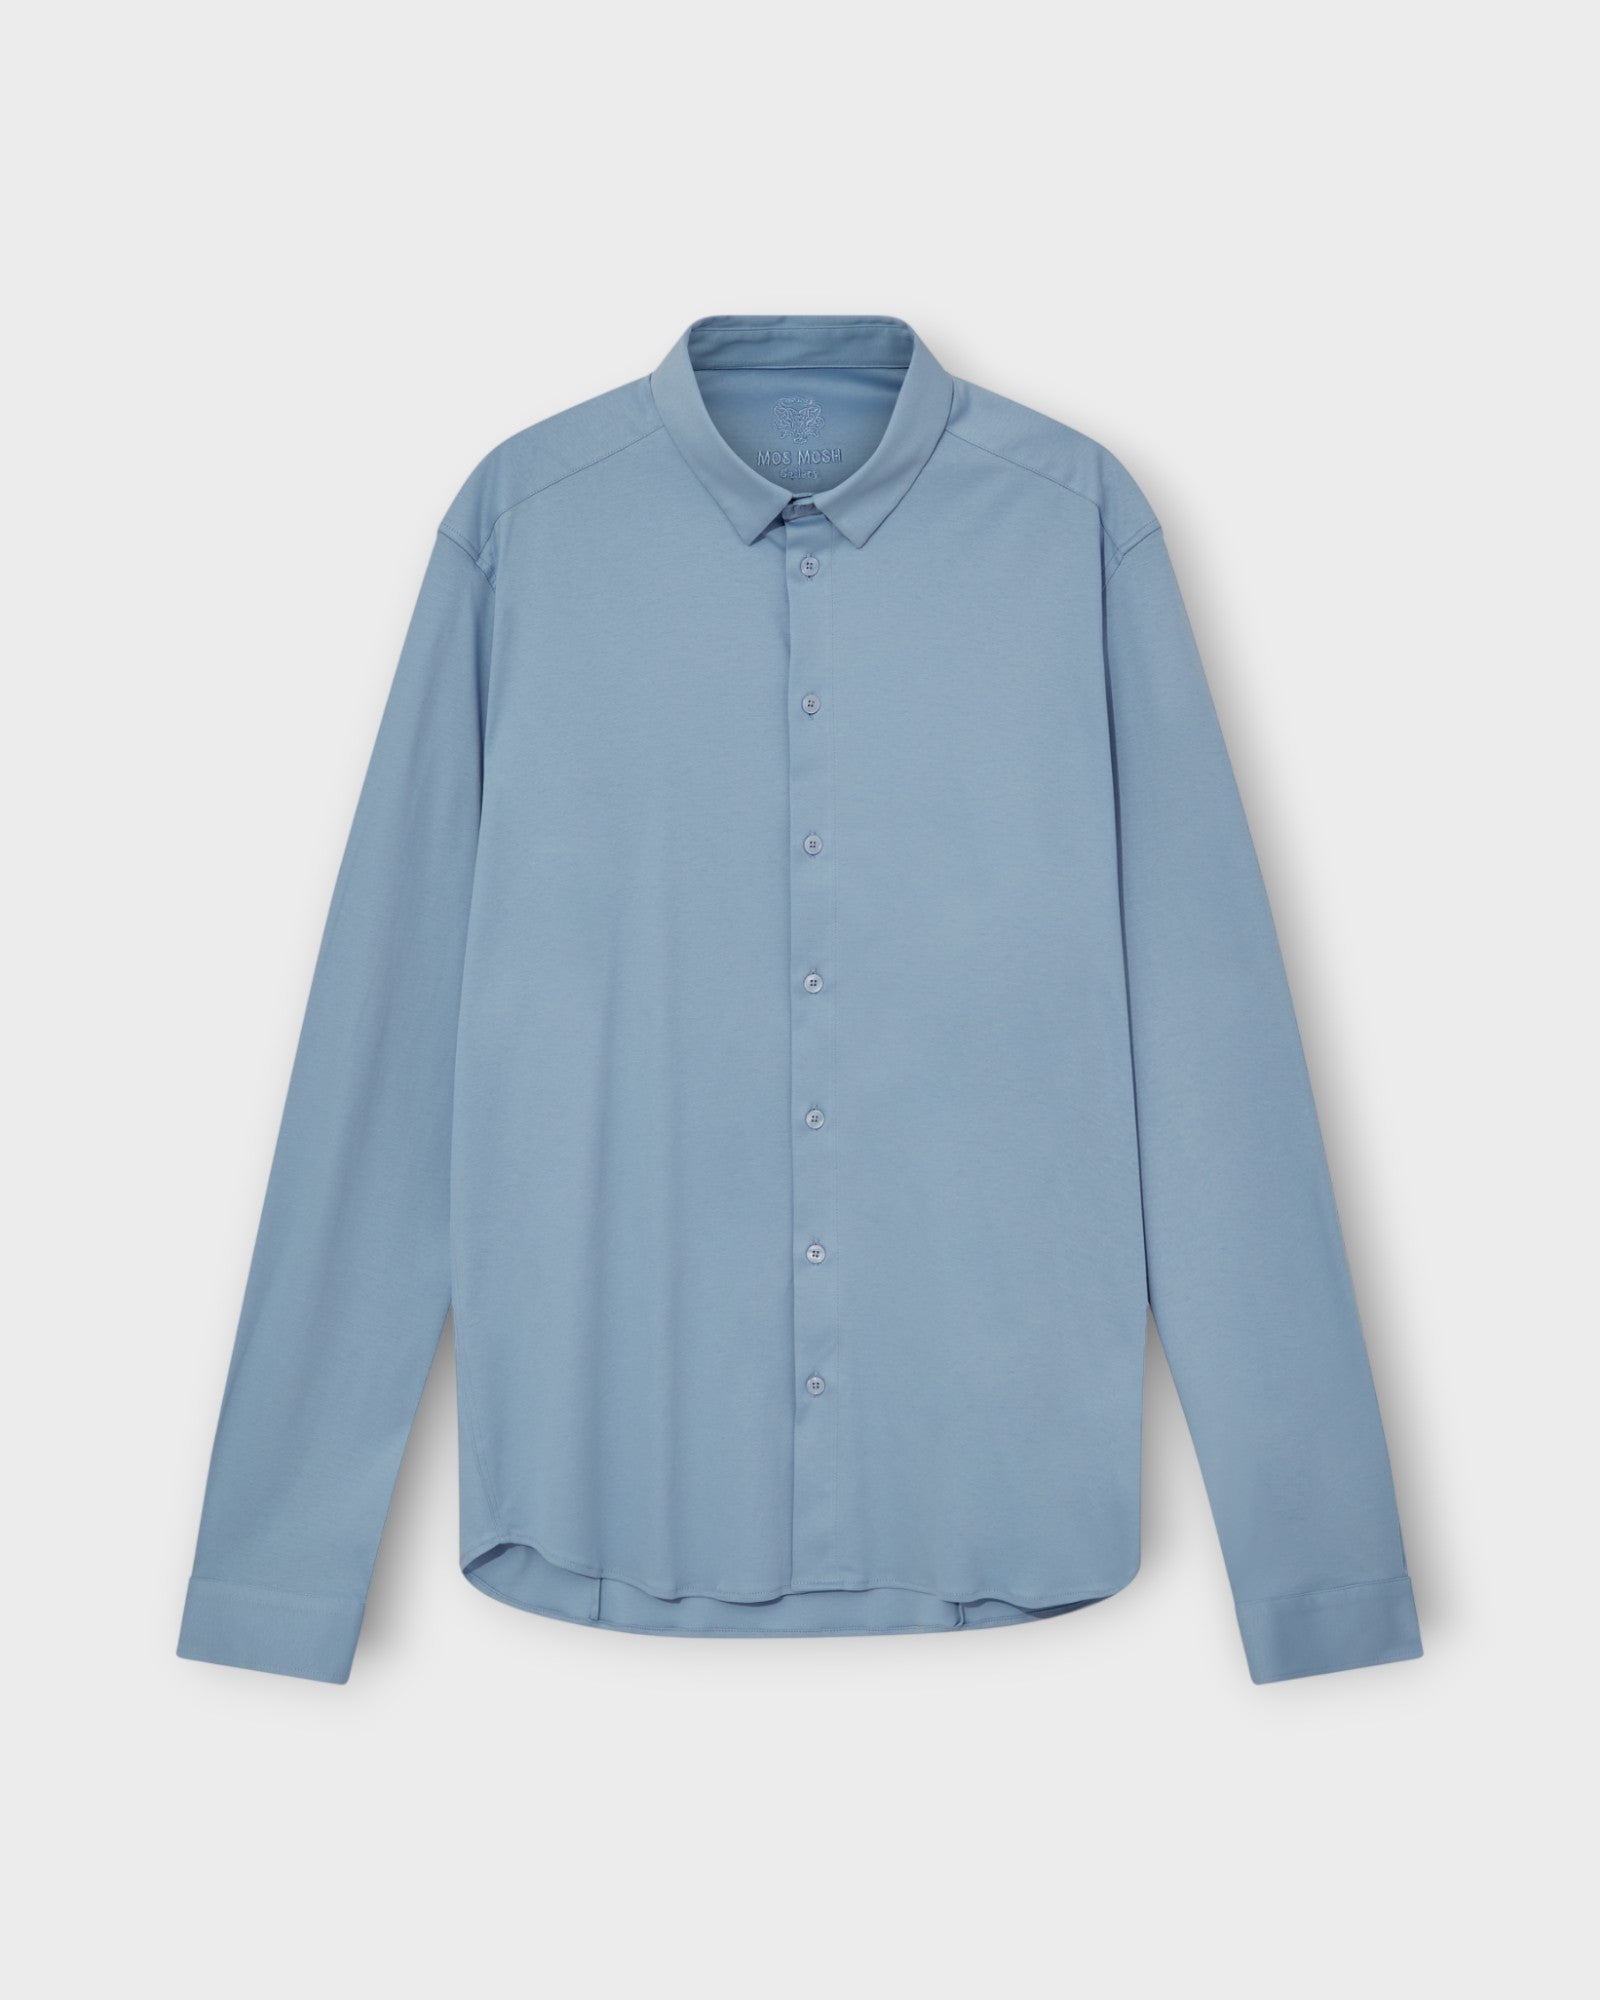 Marco Crunch Jersey Shirt Bel Air Blue fra Mos Mosh Gallery. Langærmet lyseblå stretch skjorte til mænd. Her set forfra.